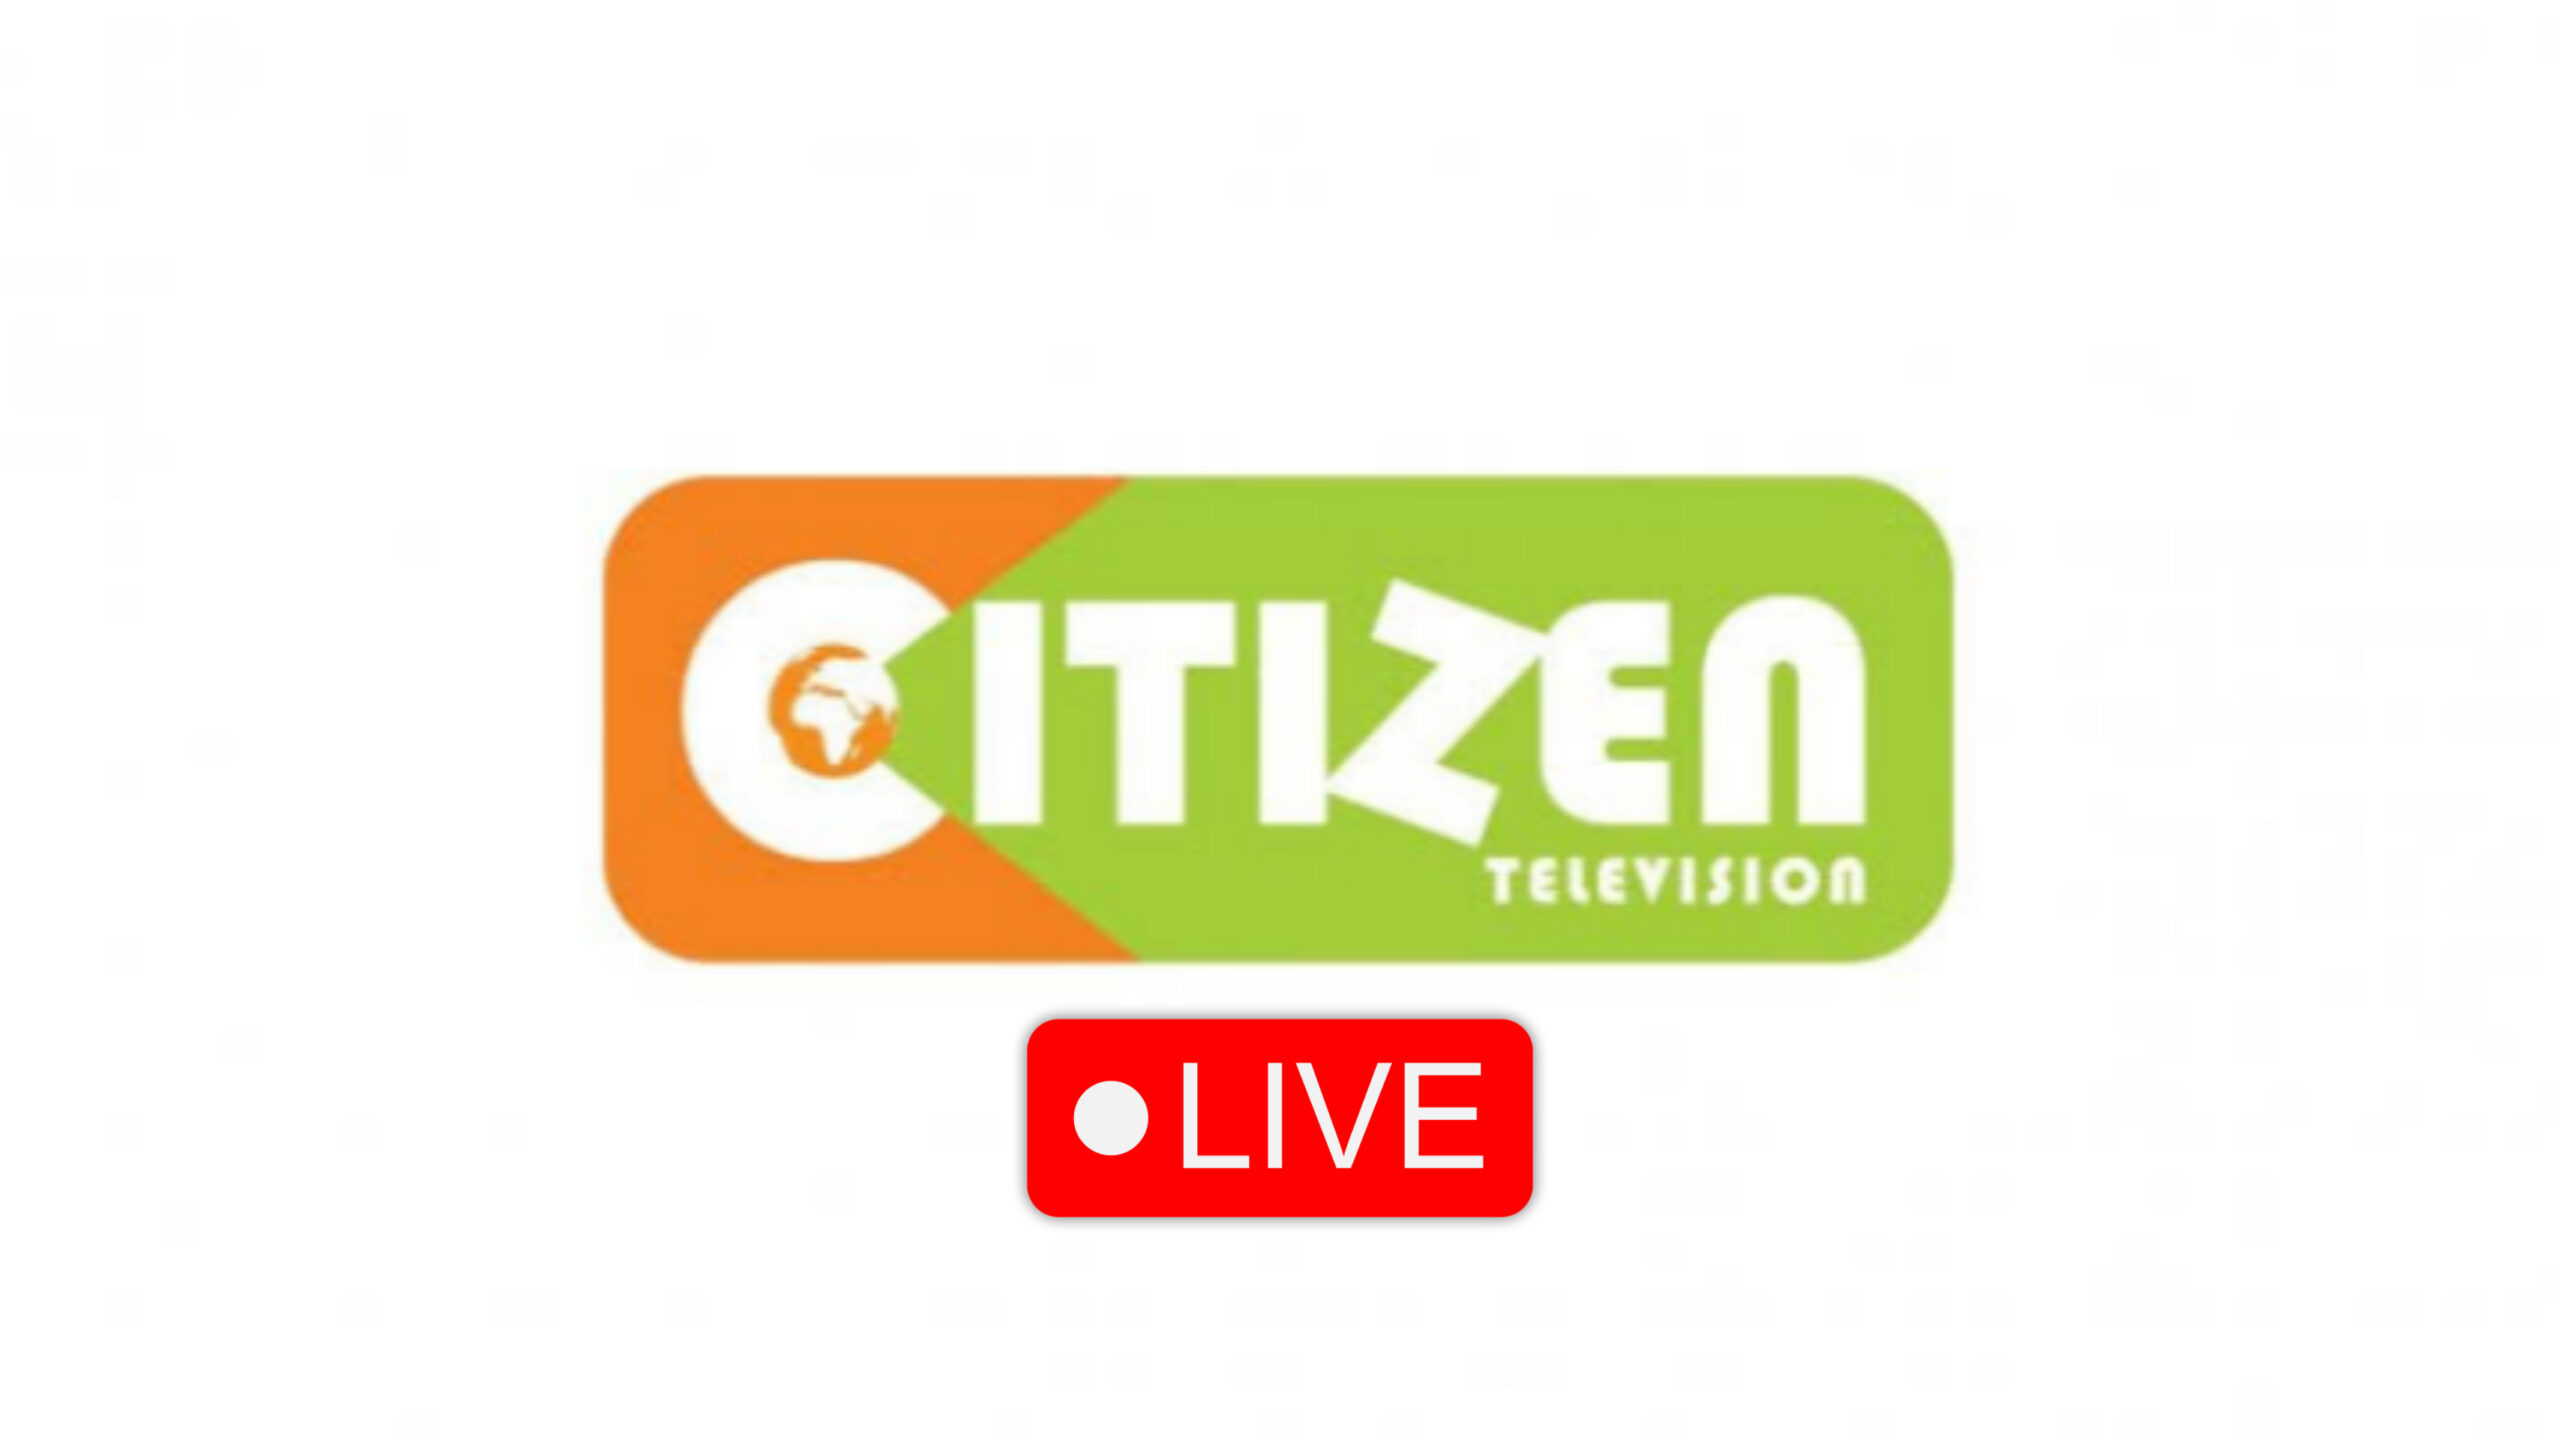 Citizen TV Live